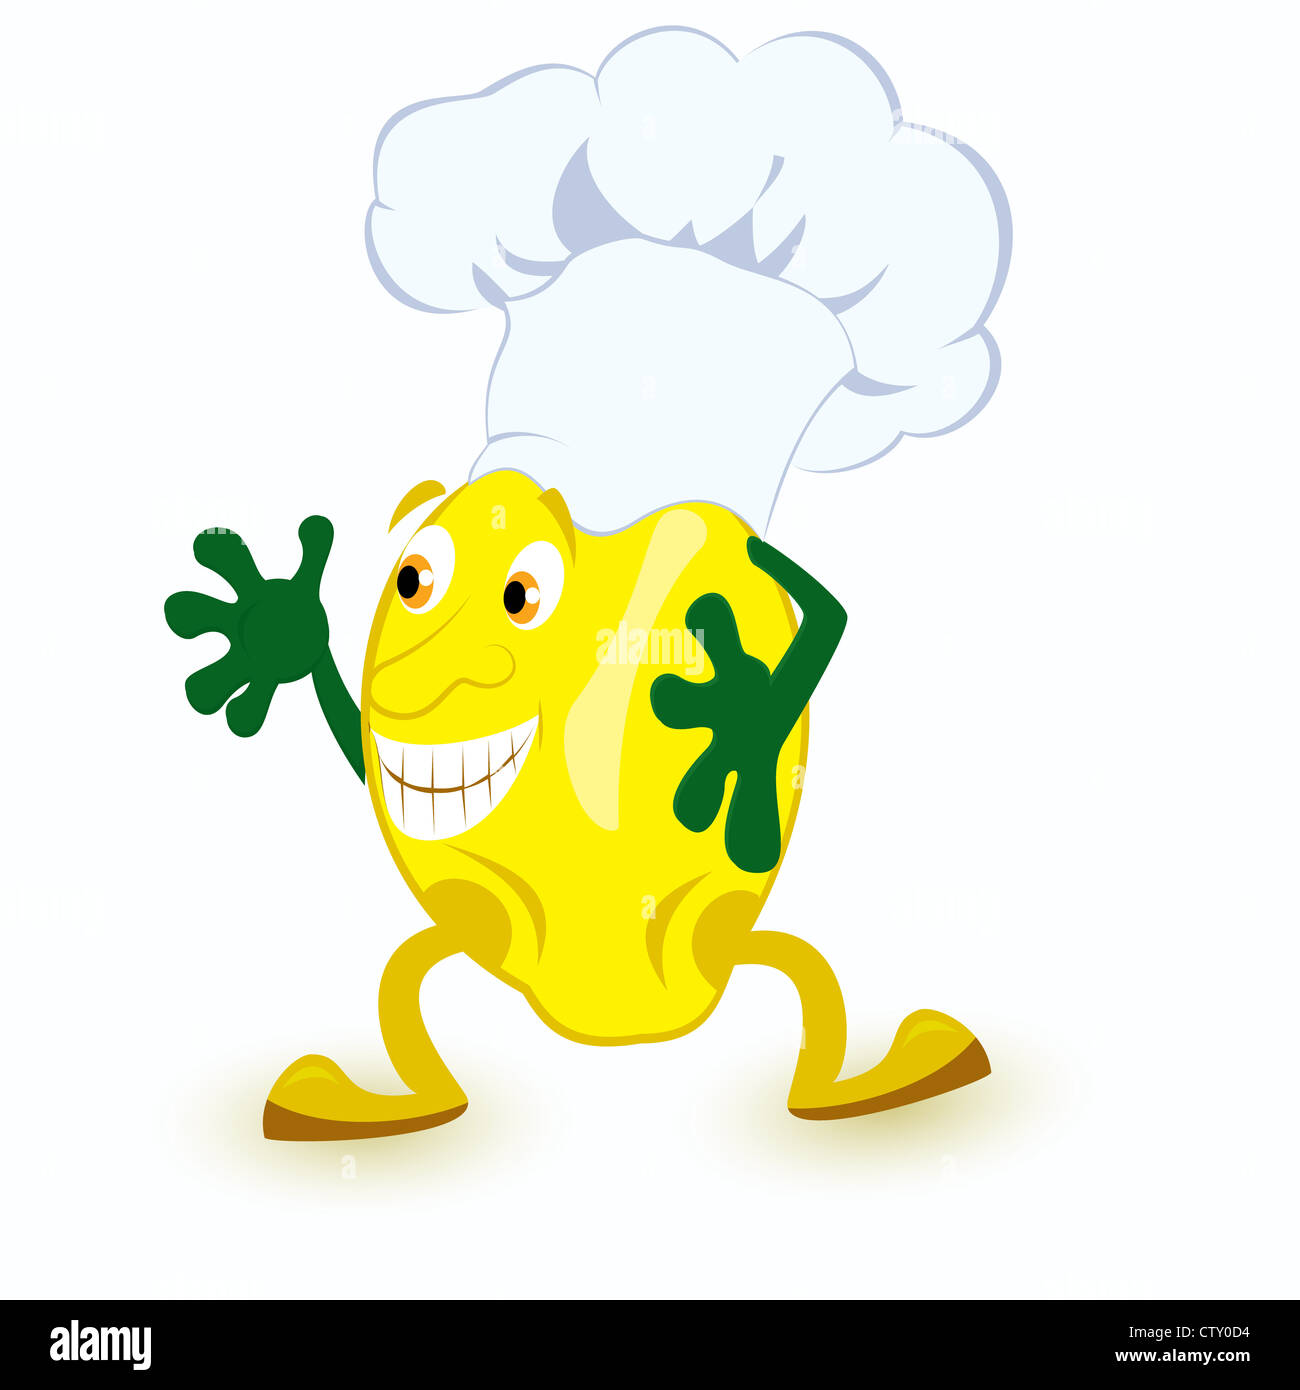 Limone personaggio dei fumetti in chef hat illustrazione vettoriale Foto Stock